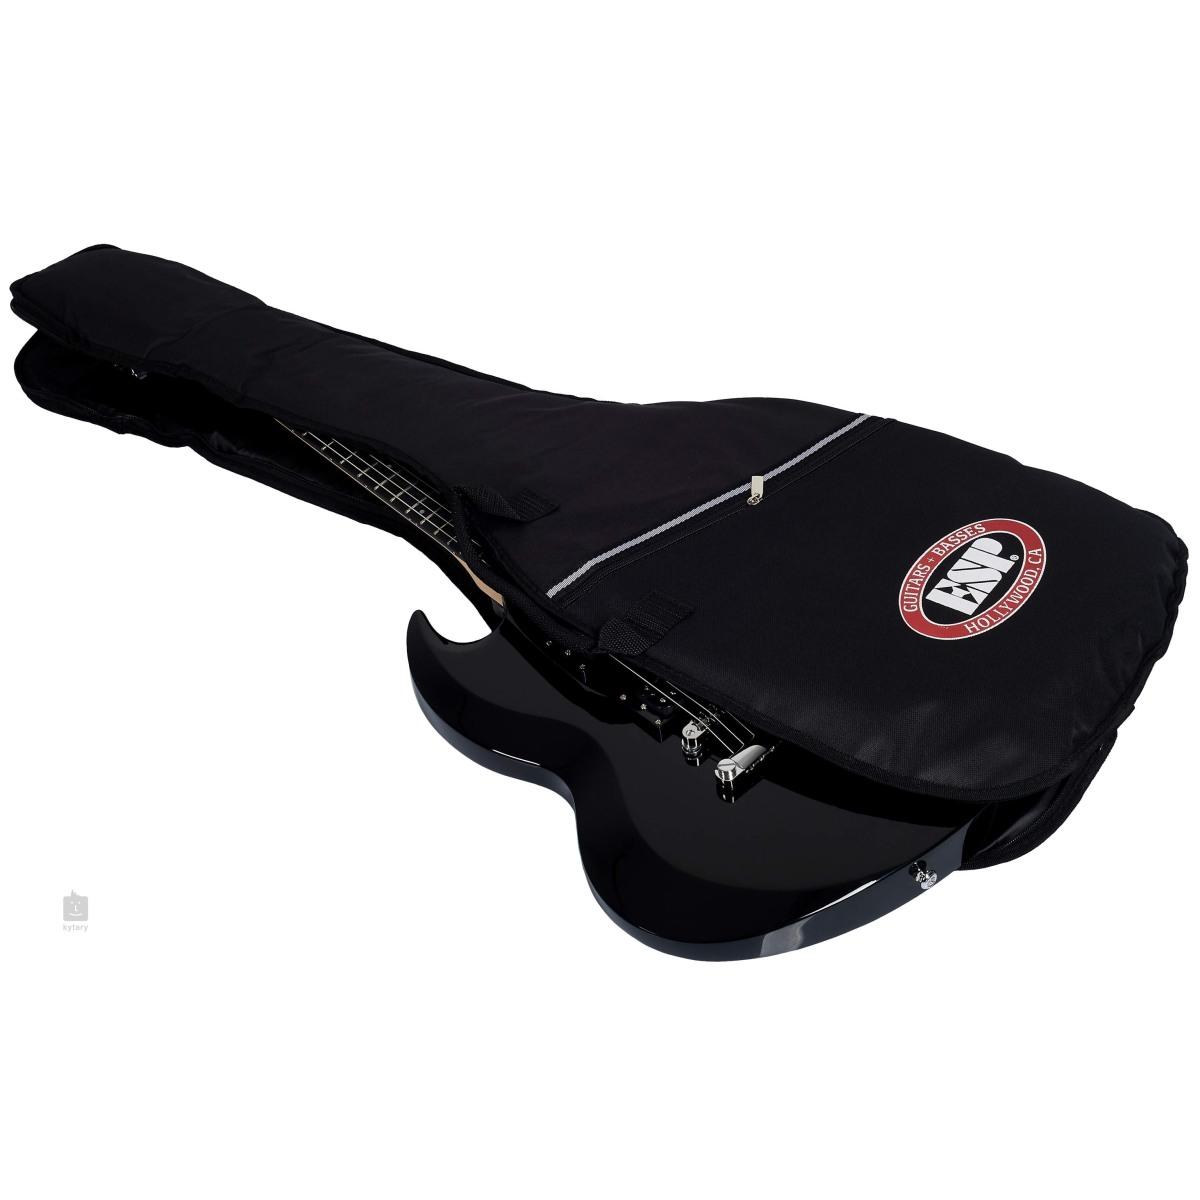 Esp Ltd Viper-10 chitarra elettrica  con borsa